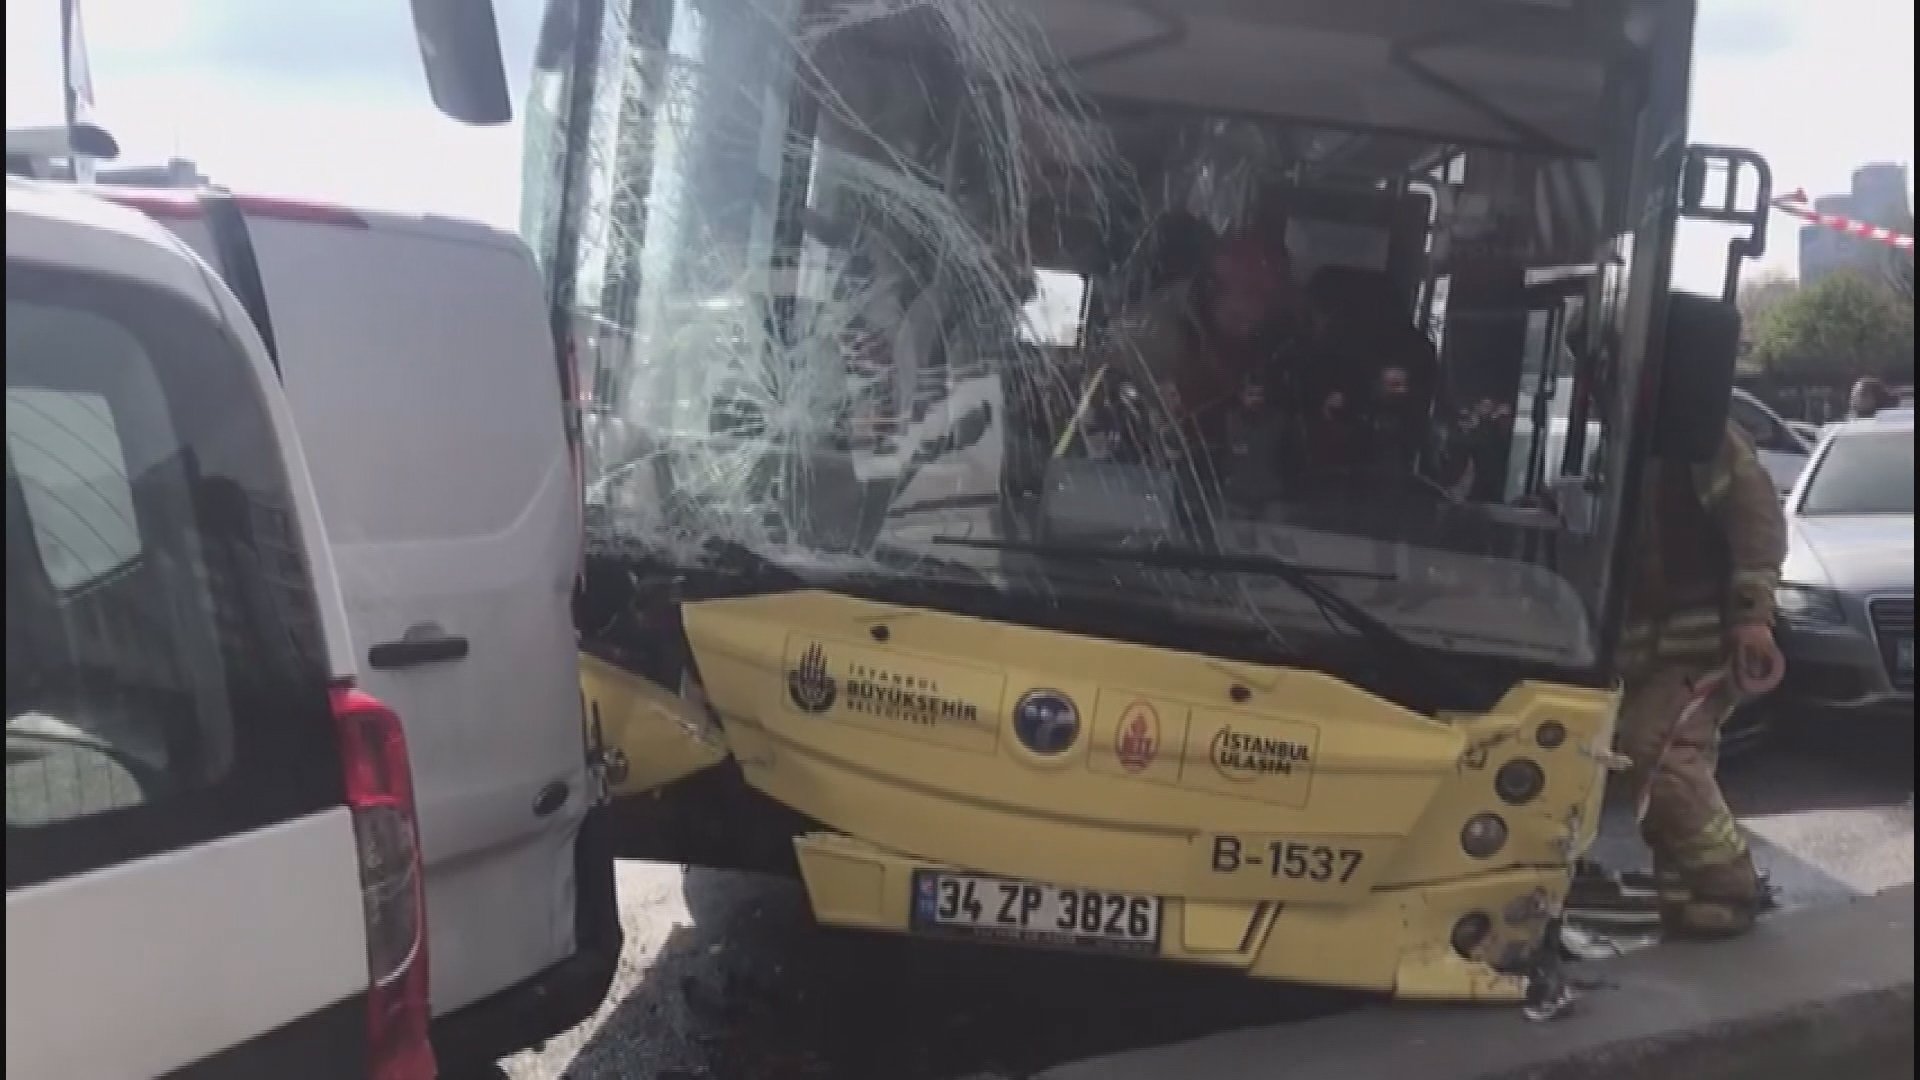 Sürücüsü rahatsızlanan İETT otobüsü 7 araca çarptı